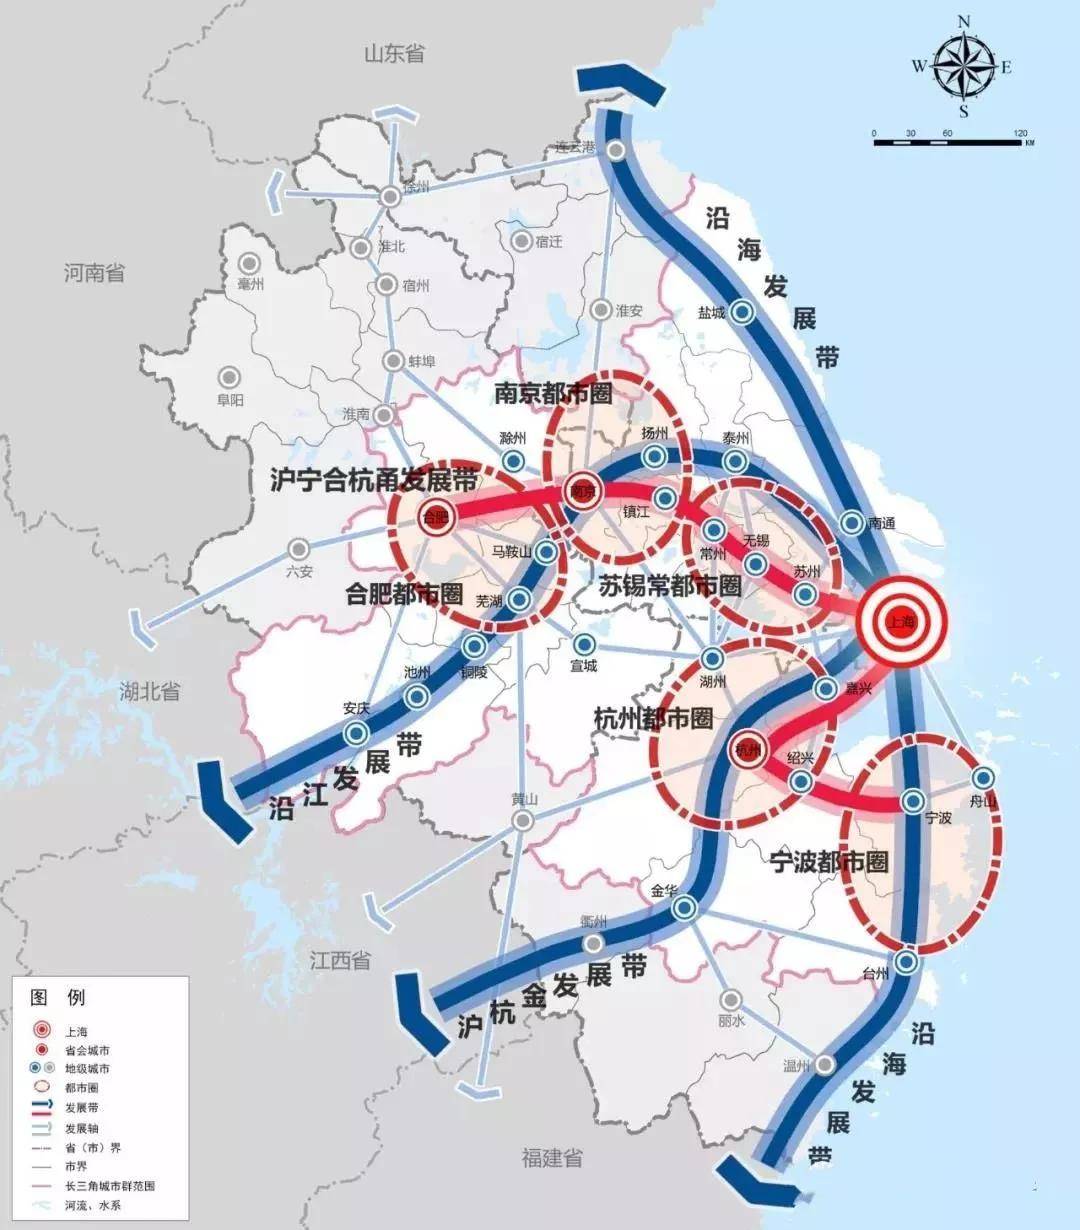 杭州湾大湾区腹地,长三角战略助推杭州湾新区,这片投资热土千万不要再